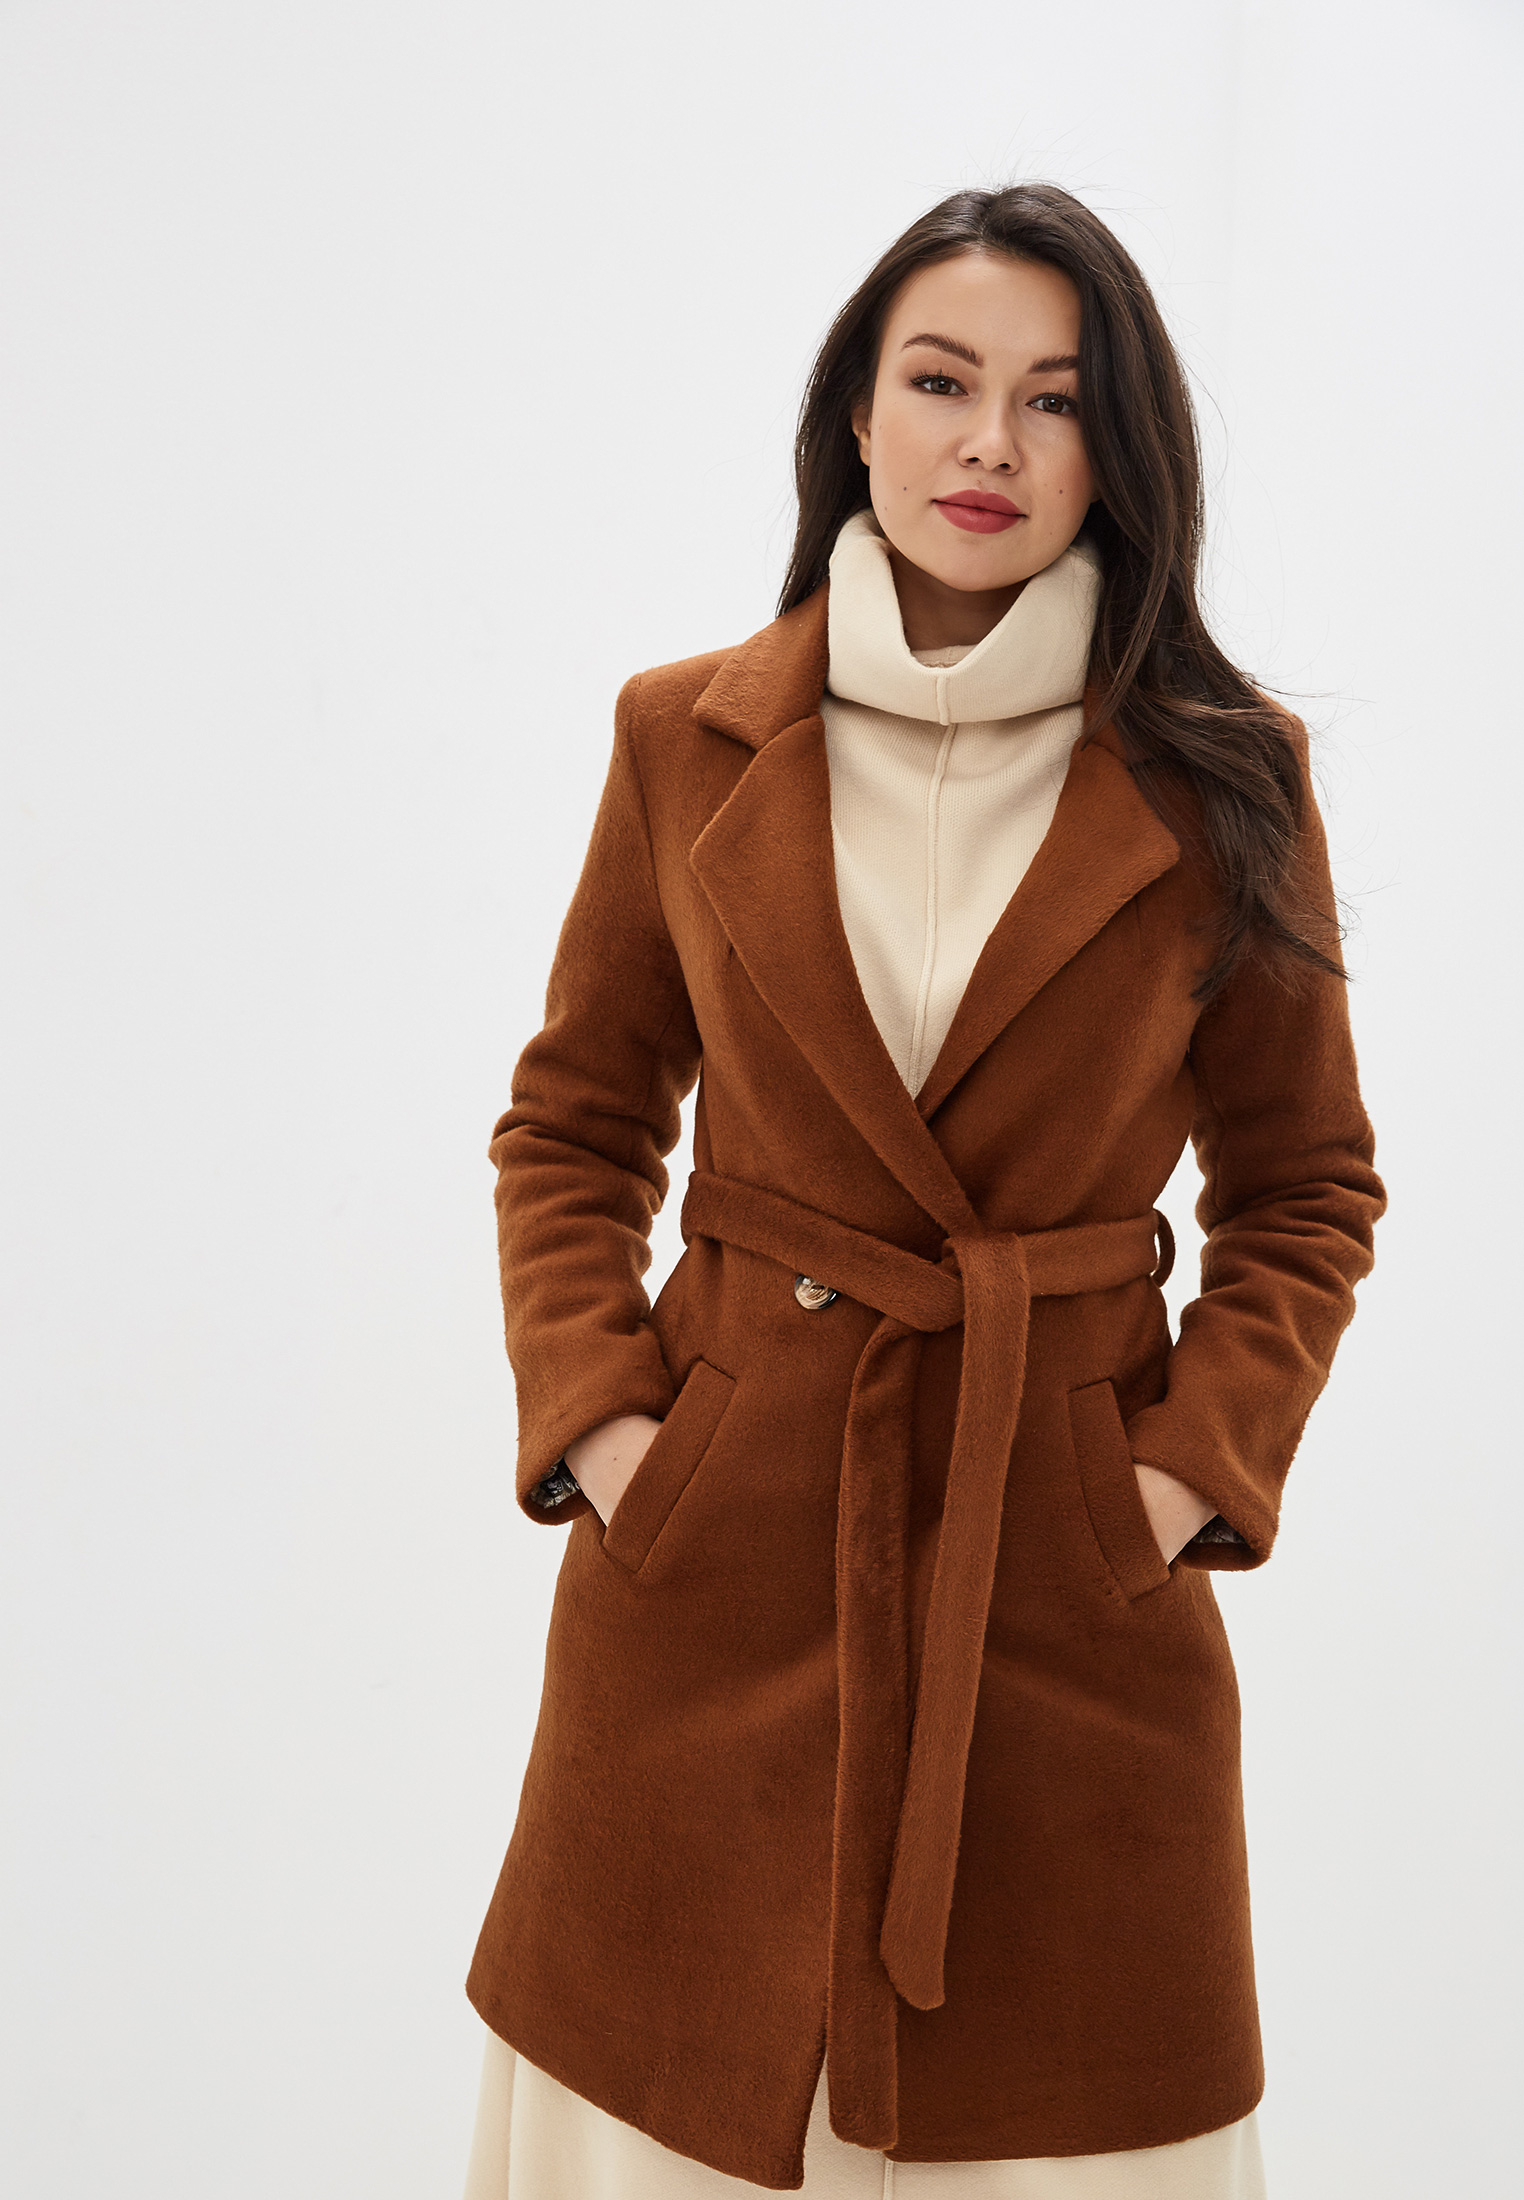 Купить коричневое пальто. Коричневое пальто женское. Коричневое пальто. Пальто женское коричневого цвета. Пальто женское зимнее коричневое.